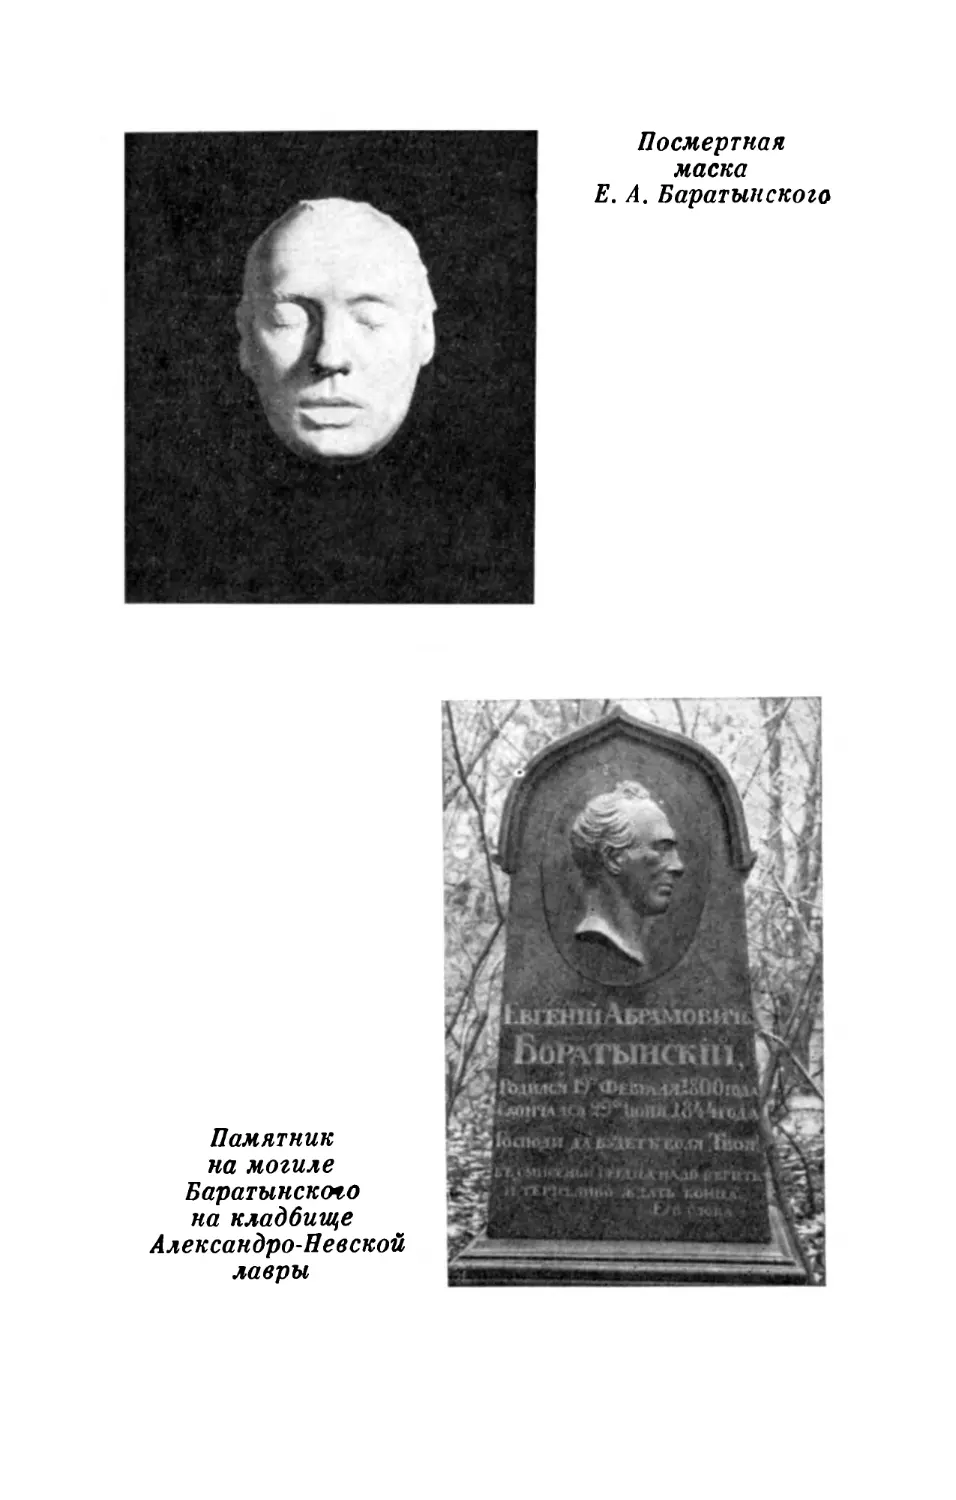 Посмертная маска Е. А. Баратынского; Памятник на могиле Баратынского на кладбище Александро-Невской лавры